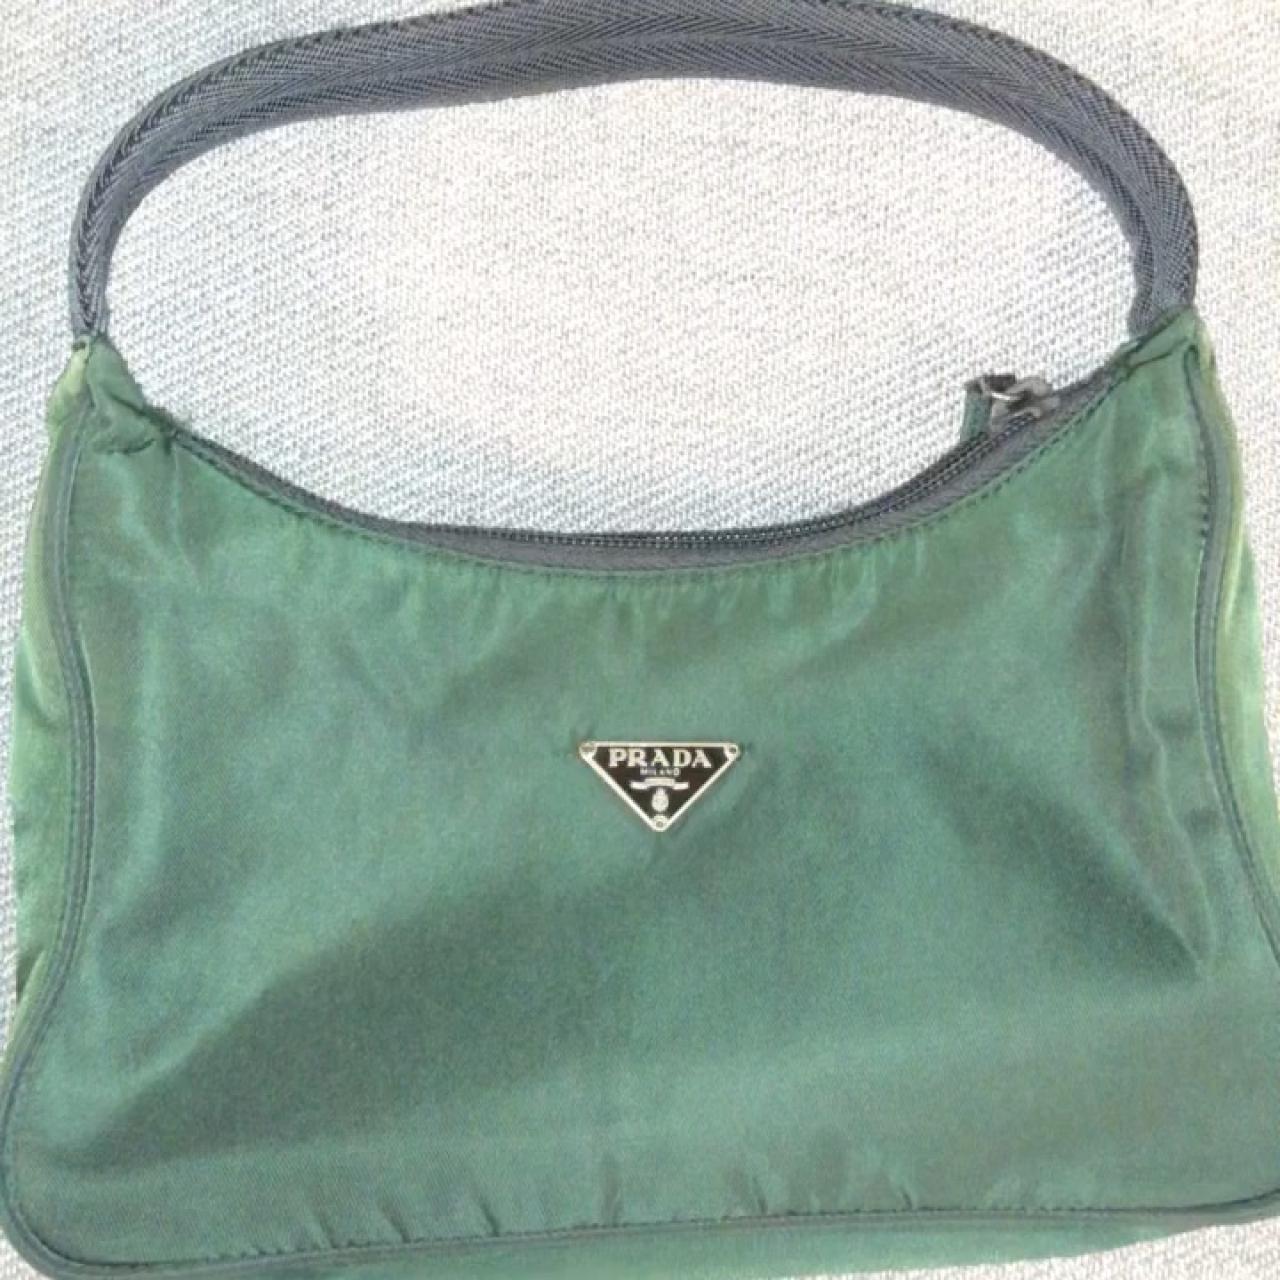 Cleo calfskin handbag Prada Green in Pony-style calfskin - 35328610